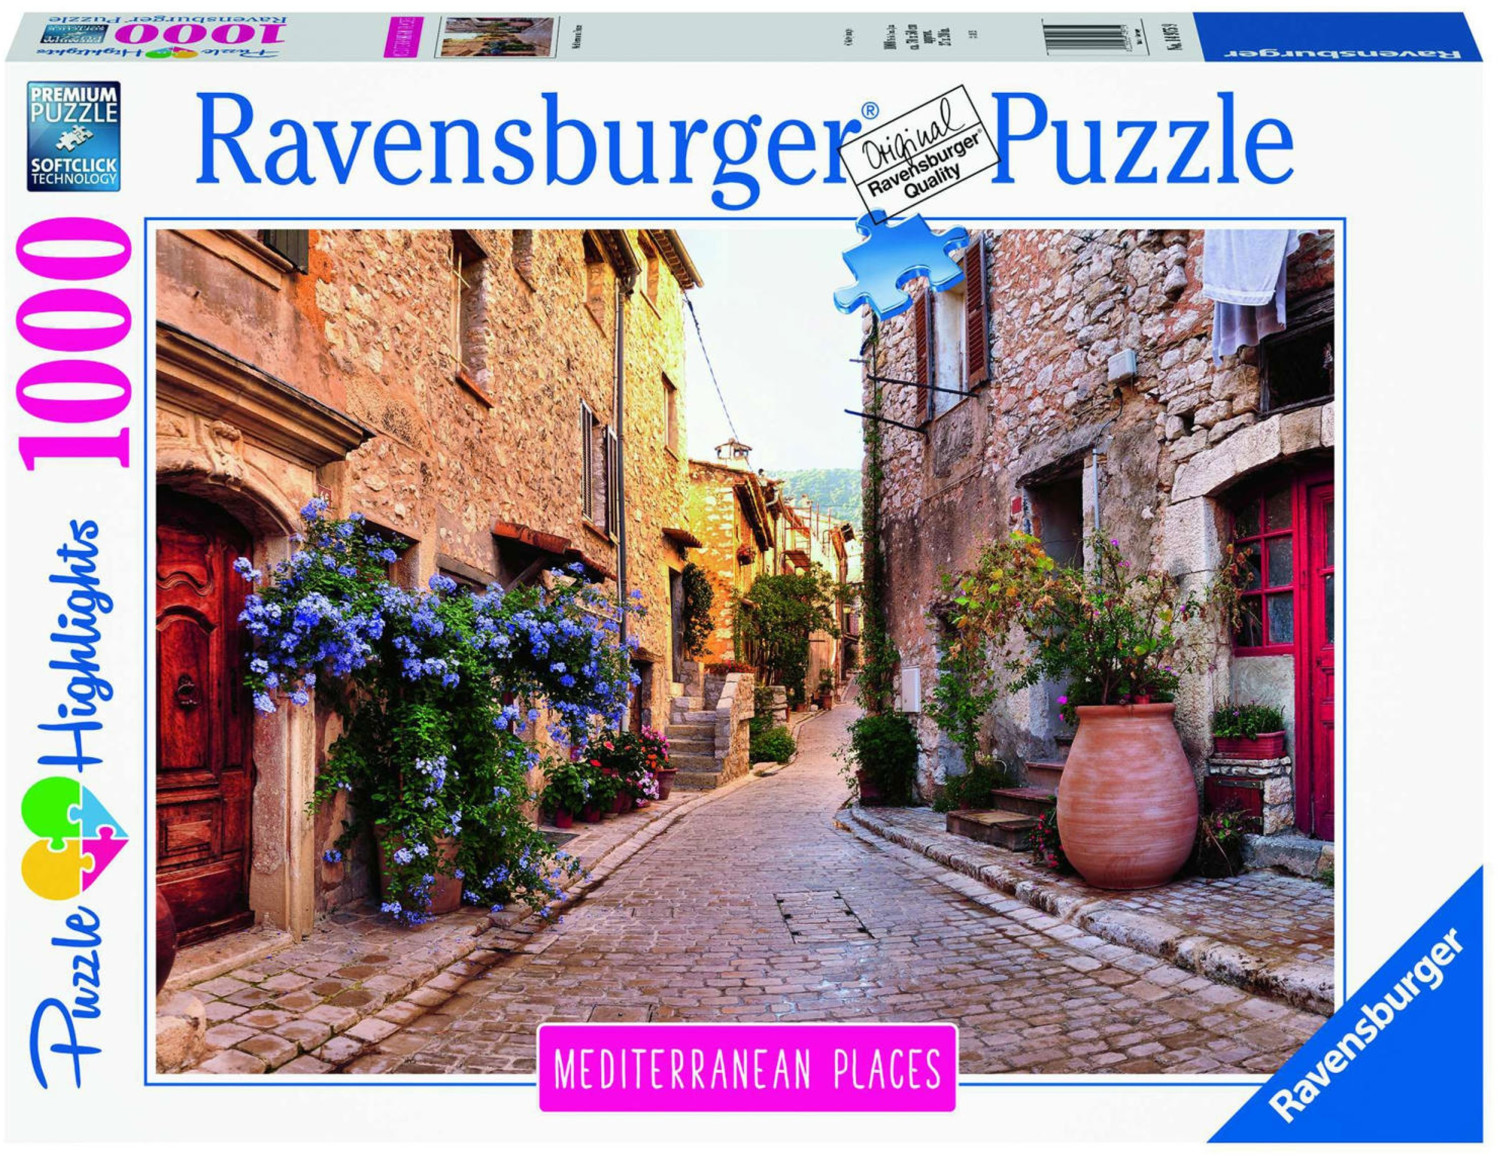 Puzzle 3000 pièces : Le règne animal - Ravensburger - Rue des Puzzles